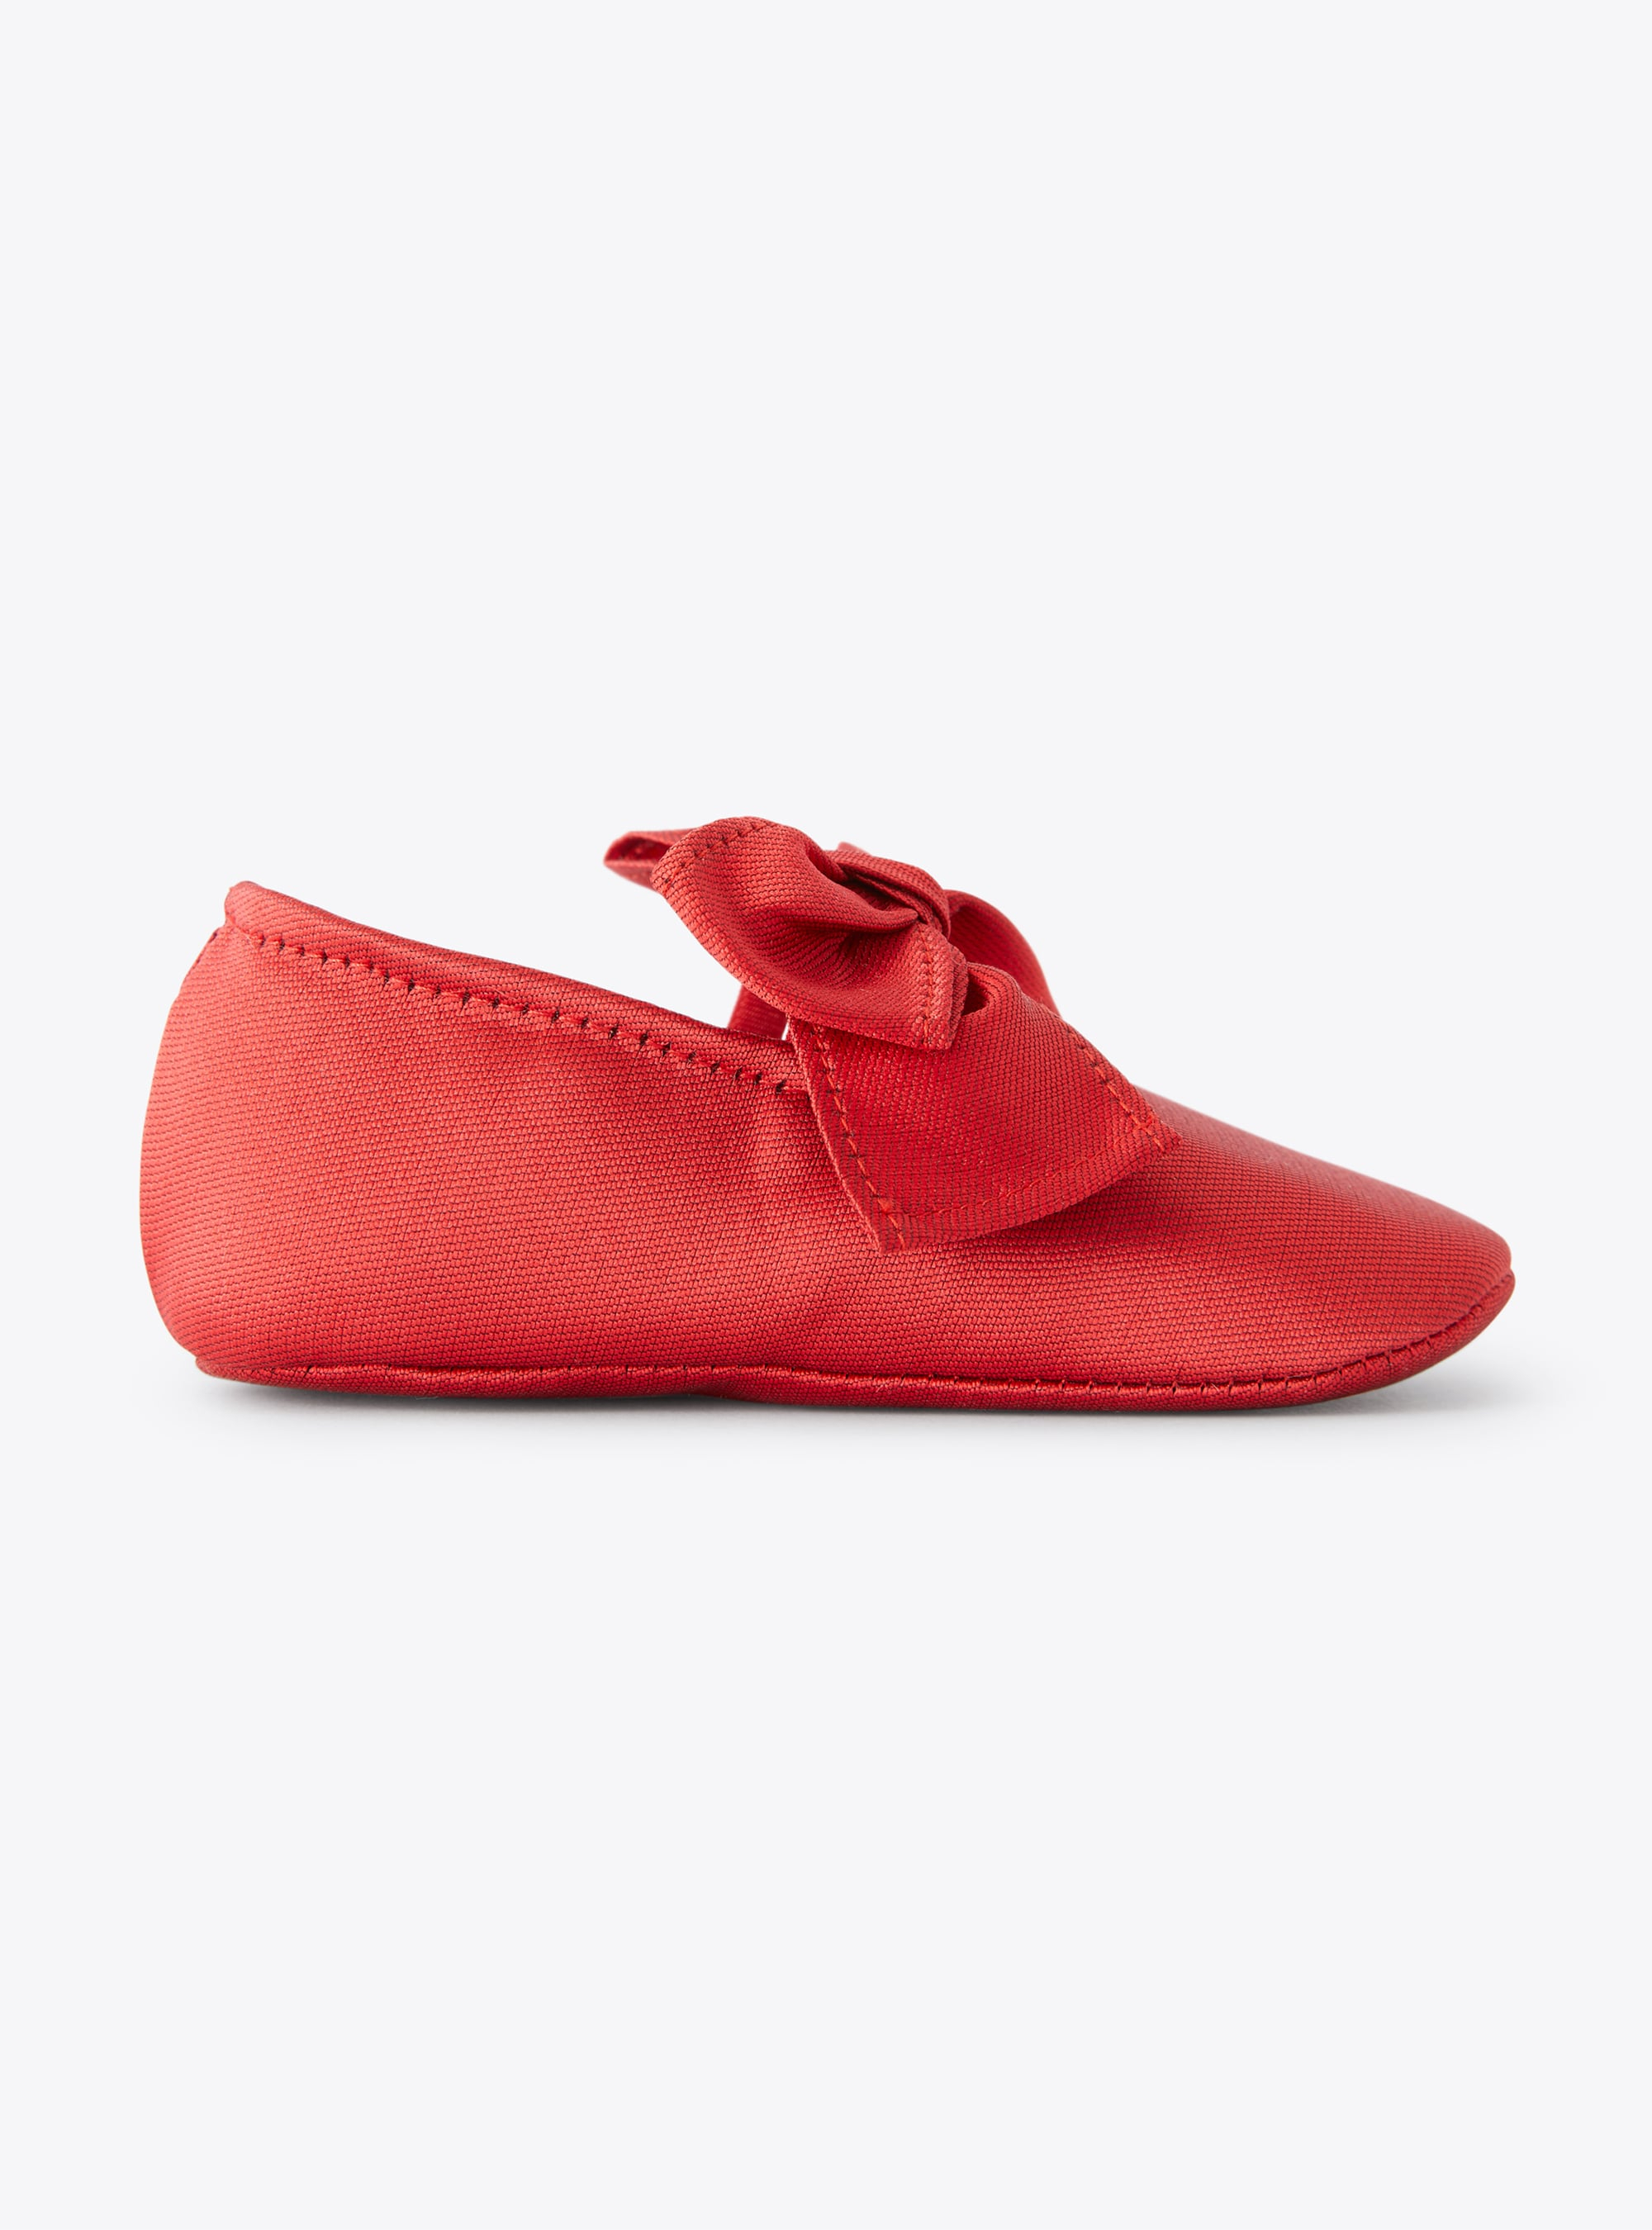 Chaussures pour bébé fille en mikado - Rouge | Il Gufo